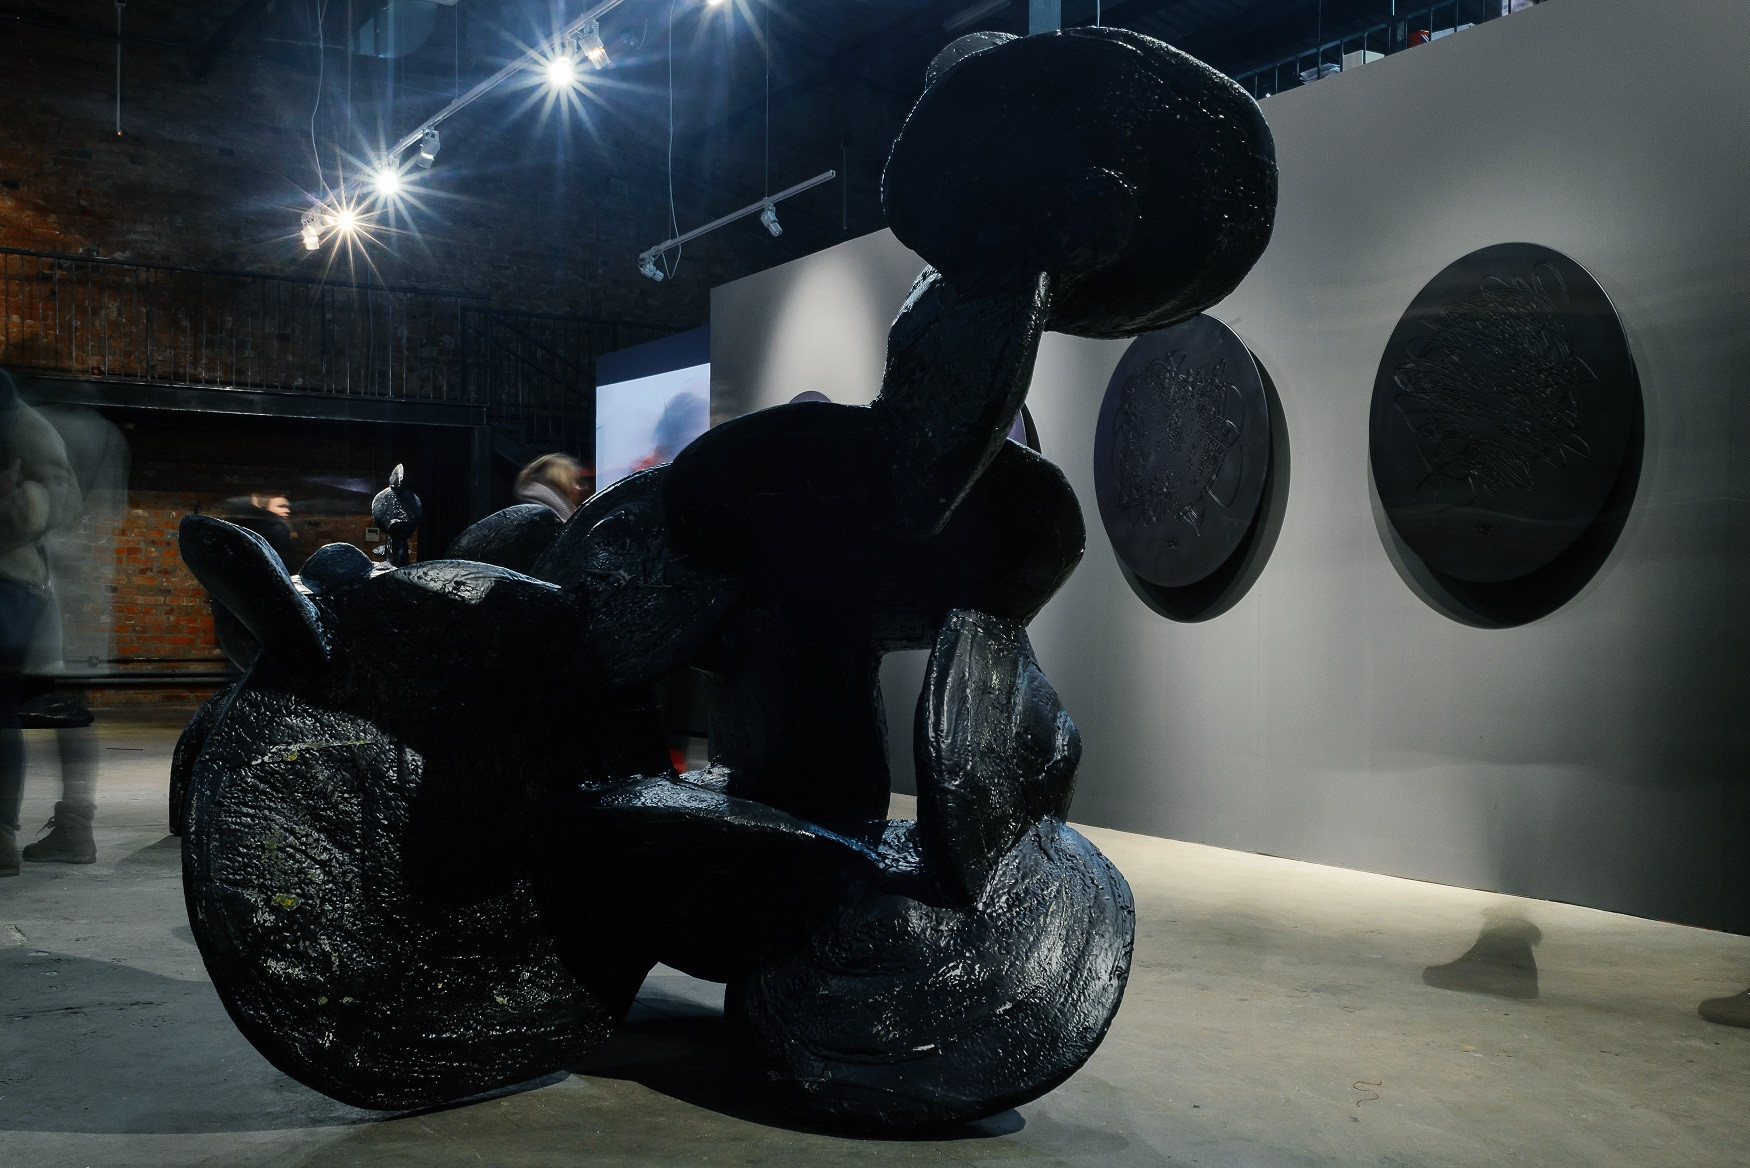 Выставка Сергея Катрана "1:30", Галерея 21, ЦСИ Винзавод, Москва, 2018. Фото Анна Денисова